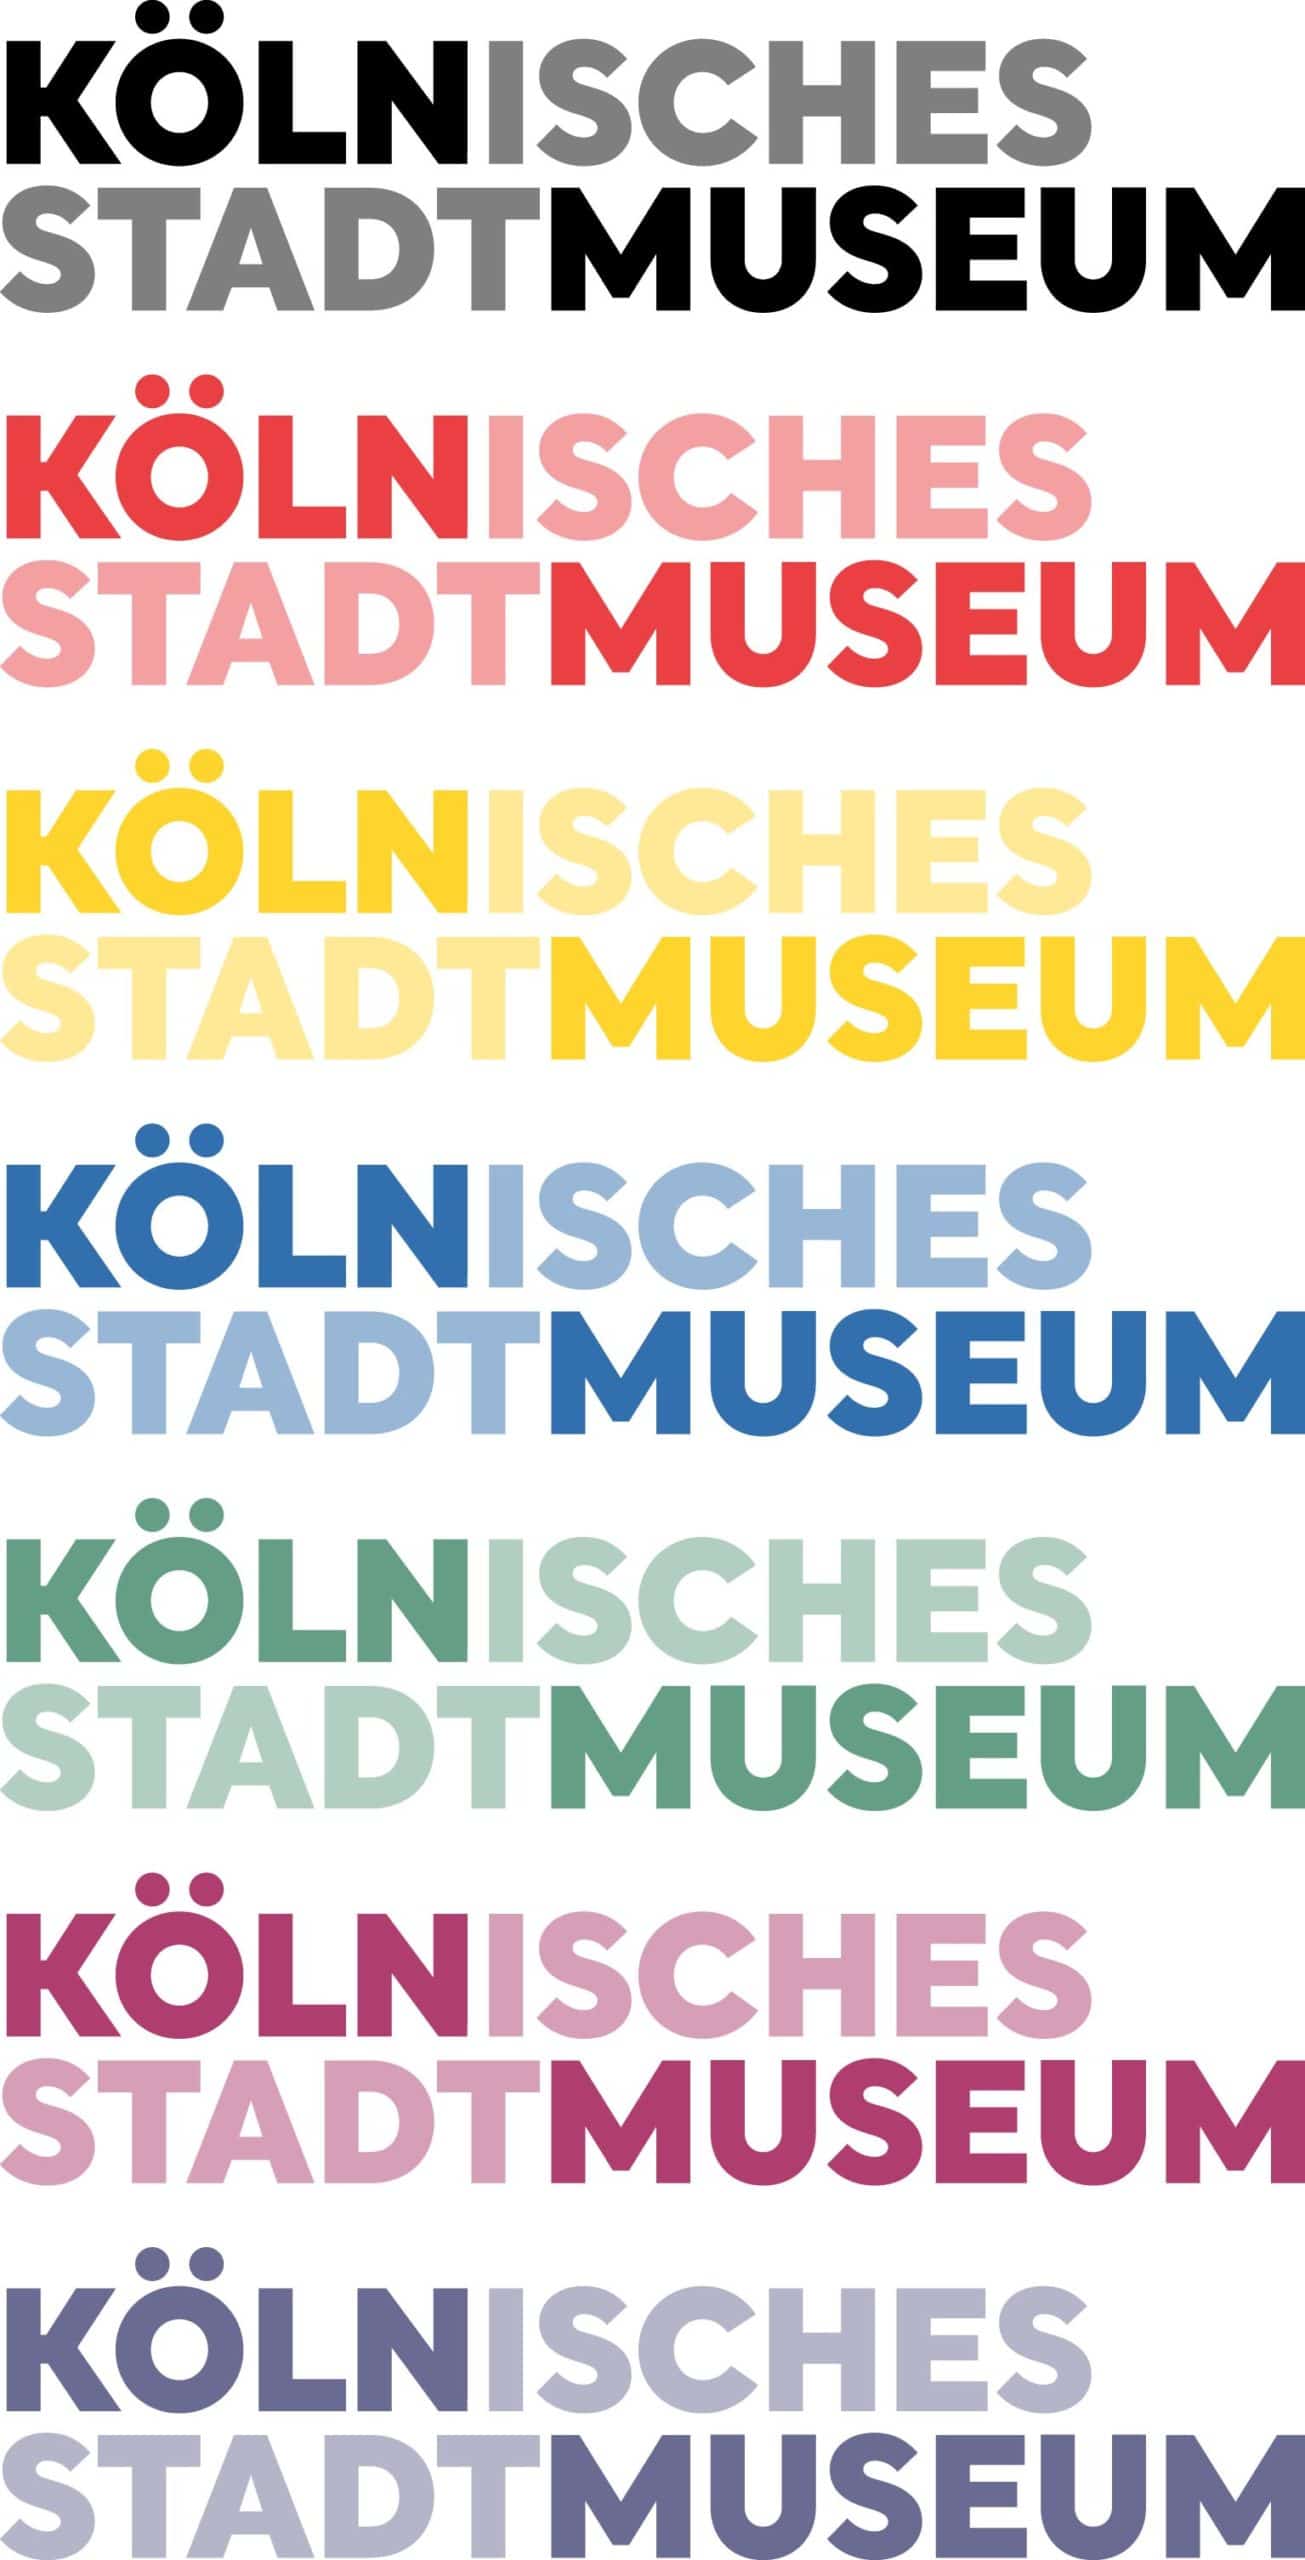 Zu sehen ist das neue Logo des Kölnischen Stadtmuseums in verschiedenen Farbversionen.